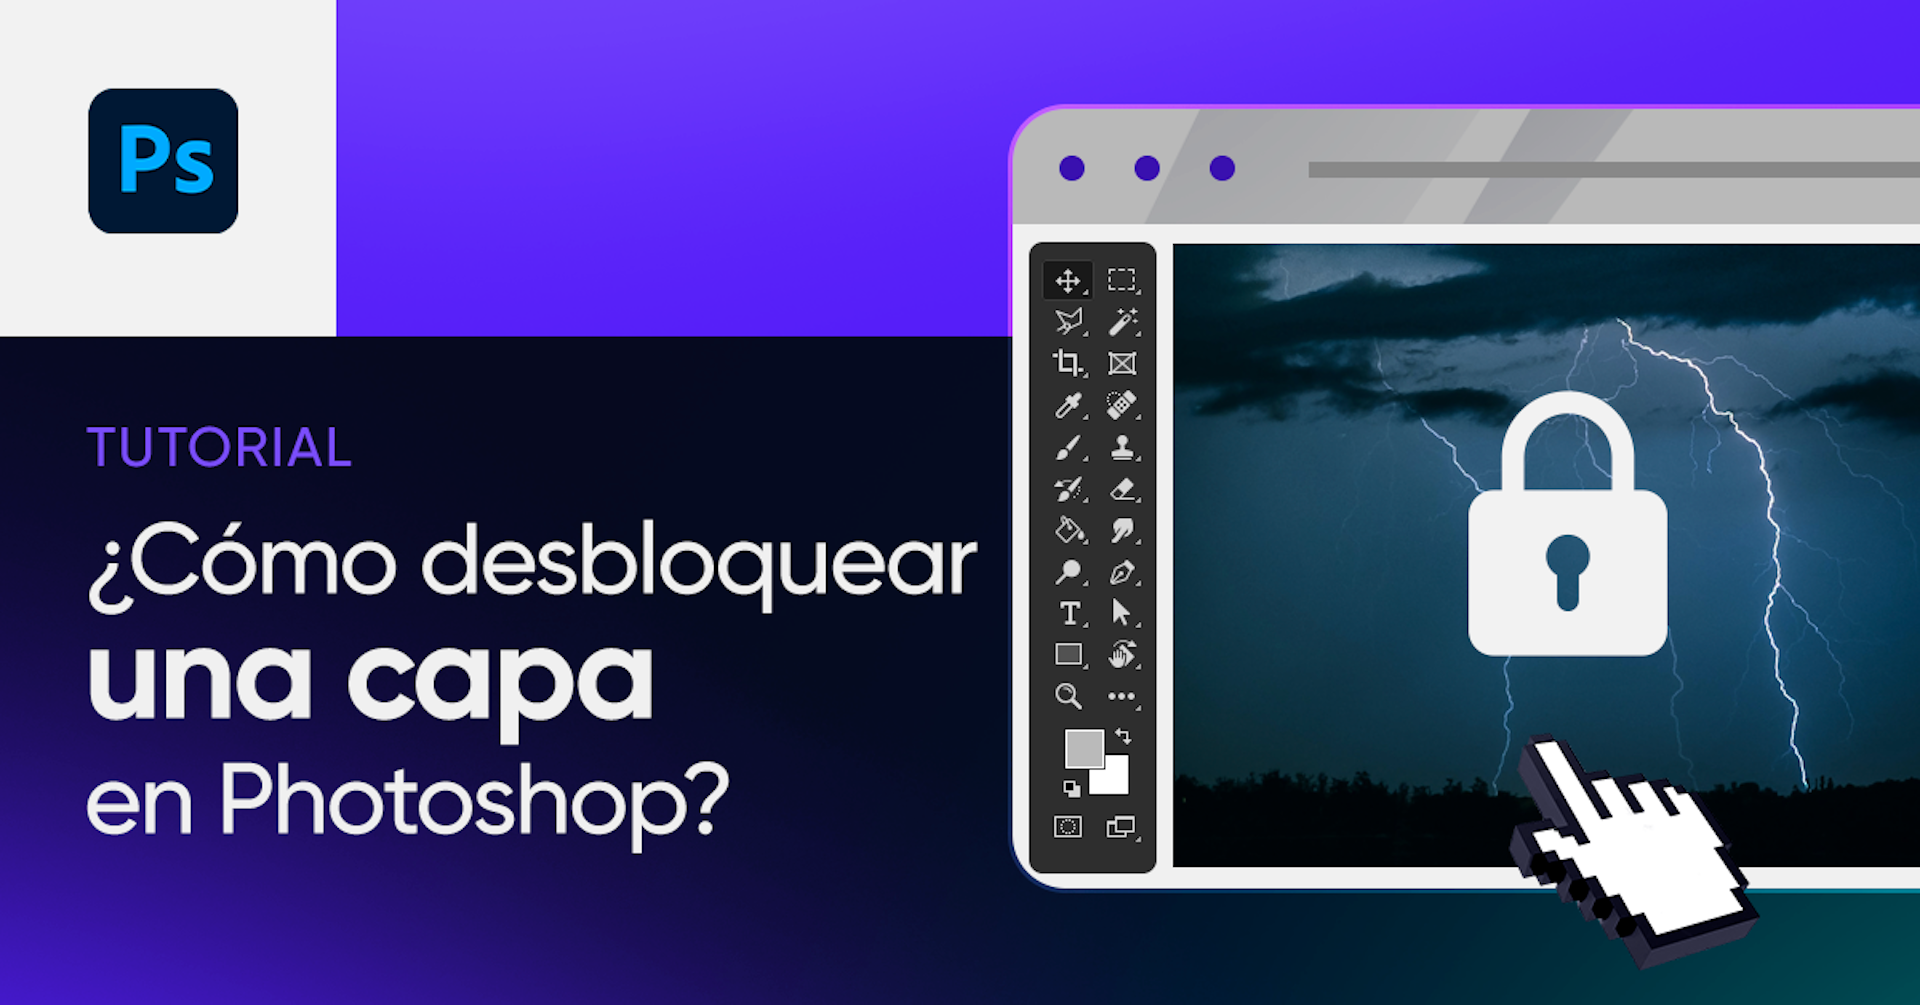 Aprende cómo desbloquear una capa en Photoshop y otras sencillas funciones